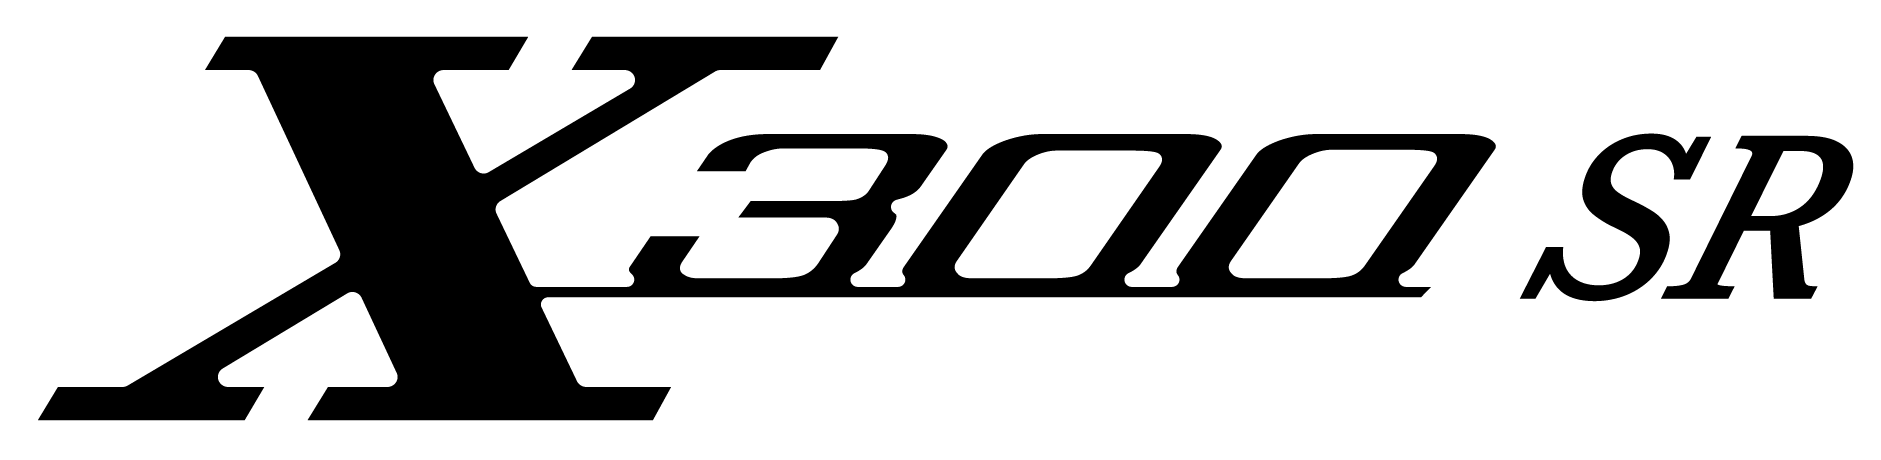 logo-X300-SR-Black-05